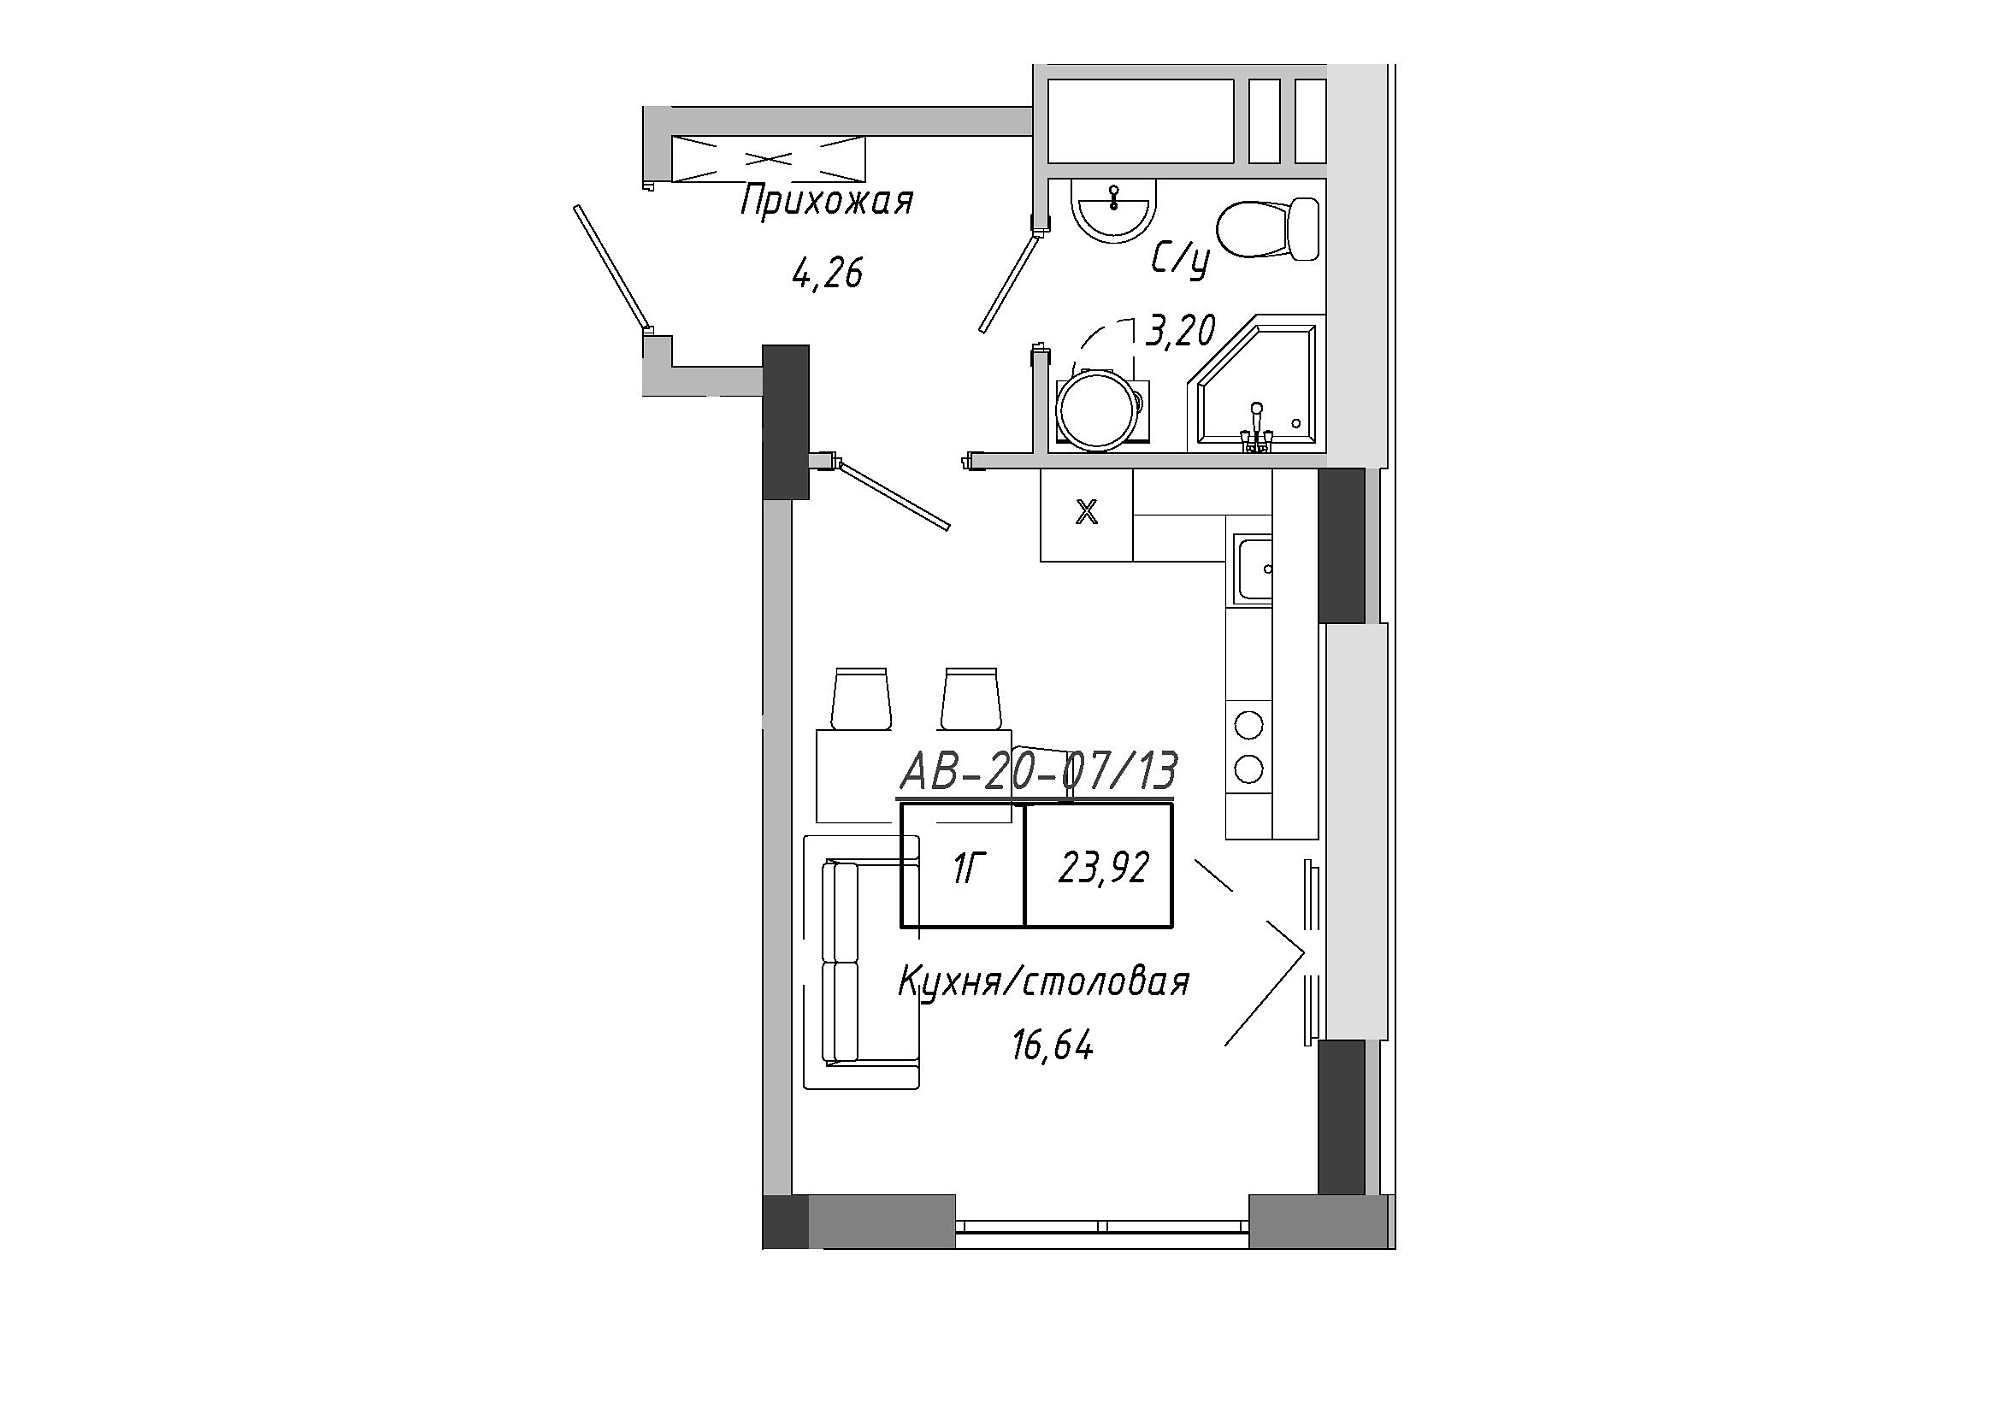 Планування Smart-квартира площею 23.4м2, AB-20-07/00013.